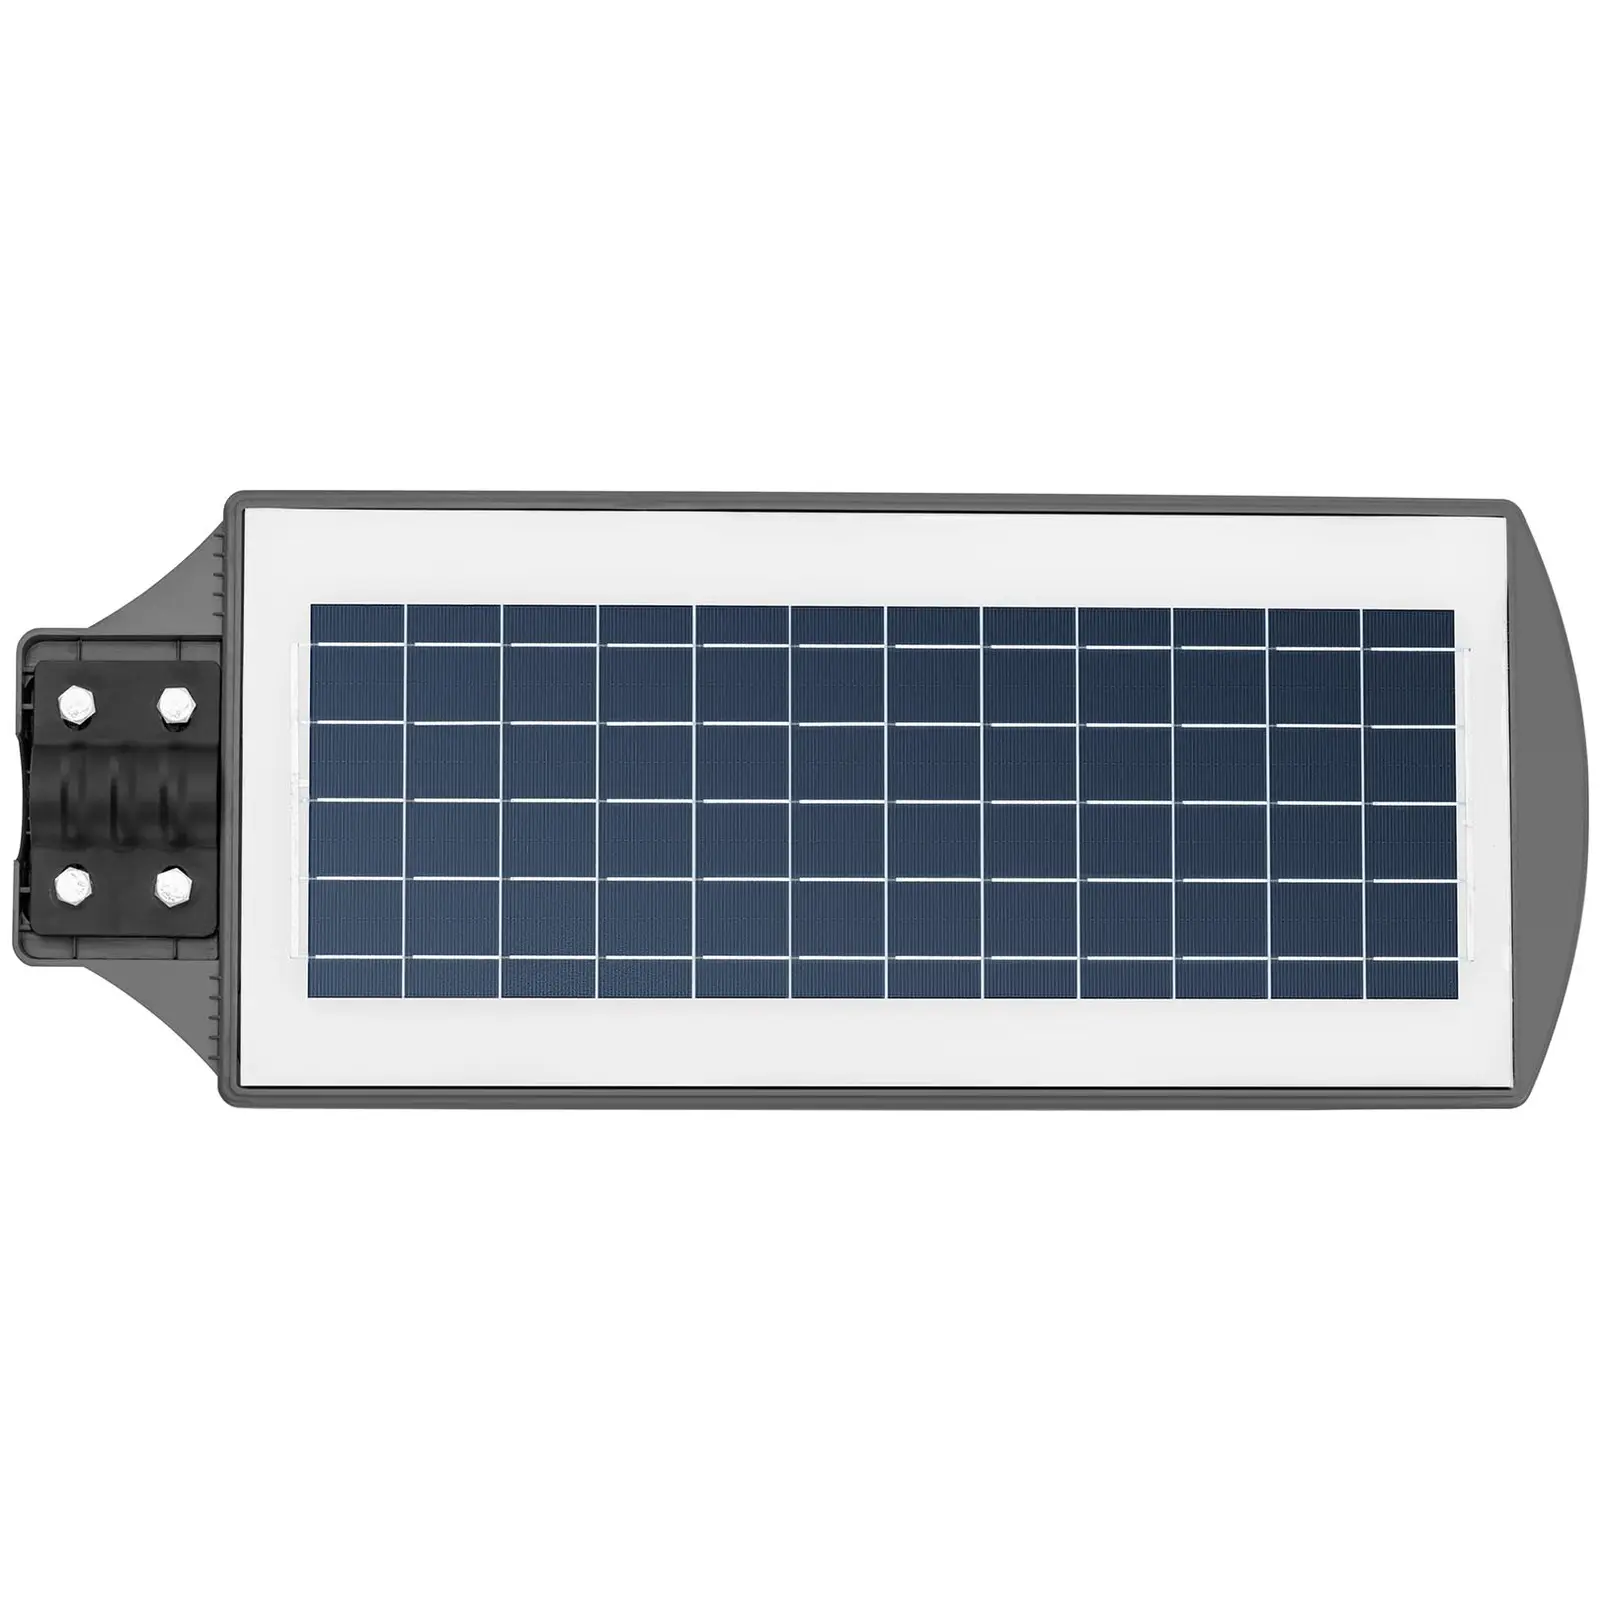 Solar-Außenleuchte - Bewegungssensor - 300 W - 6000 - 6500 K - 14 - 16 h - IP54